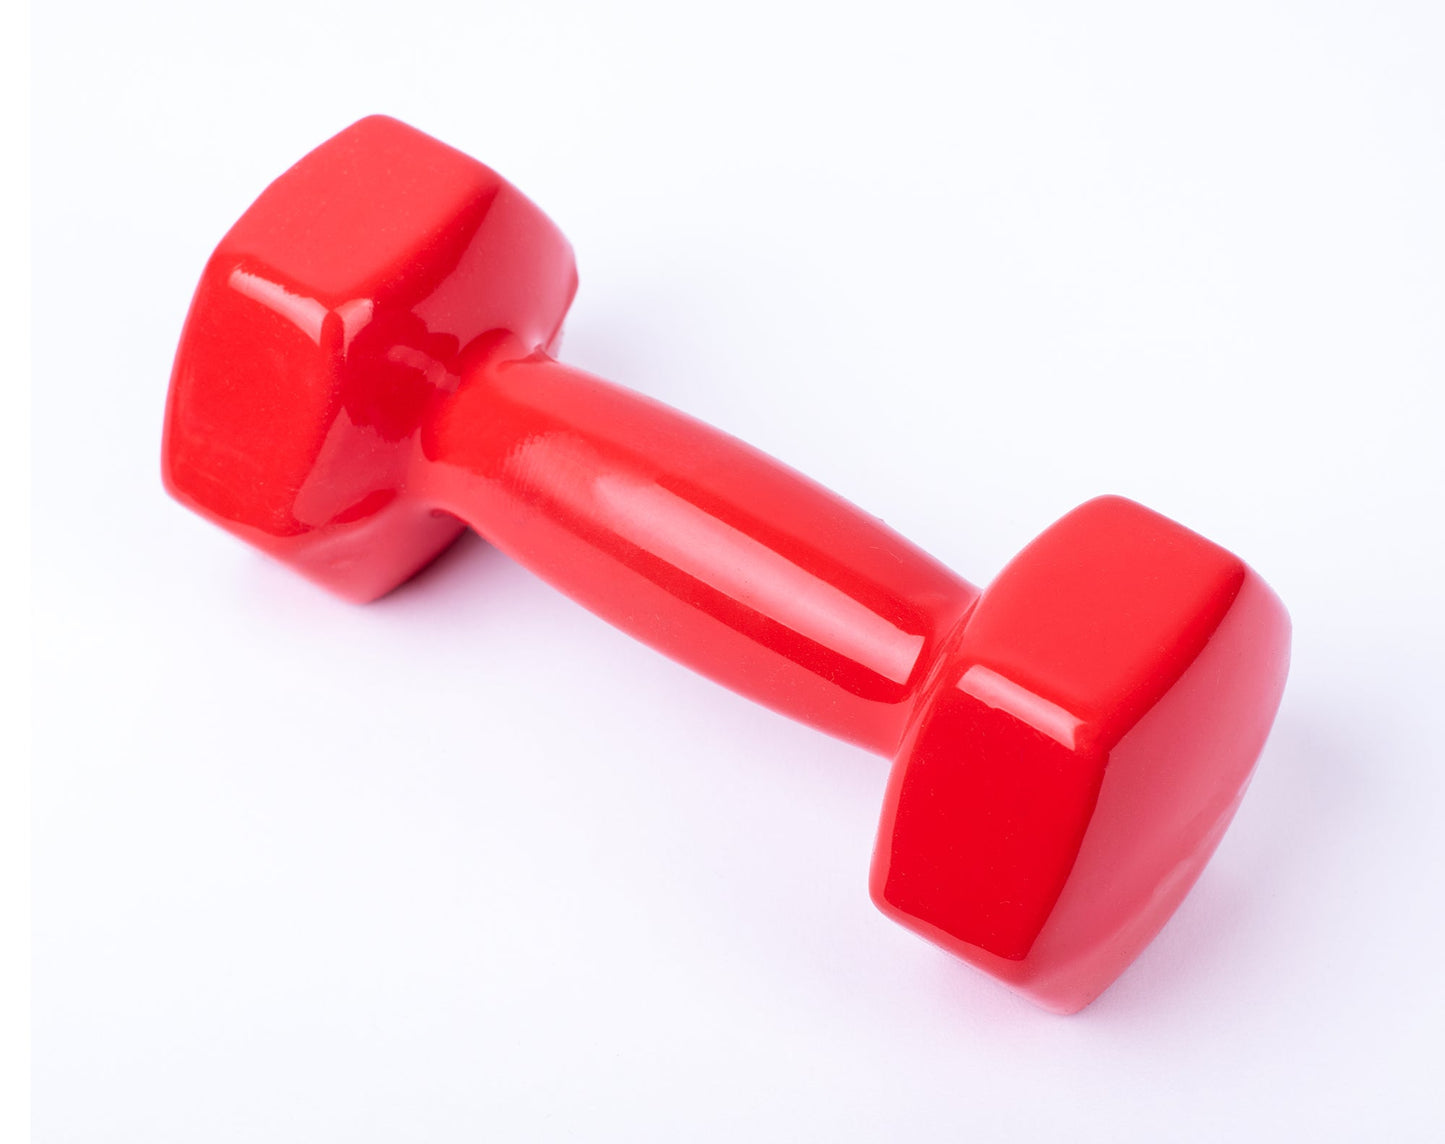 دامبل حديد للتمارين الرياضية بطبقة من الفينيل - لون احمر - قطعة واحدة - وزن 2 كيلو